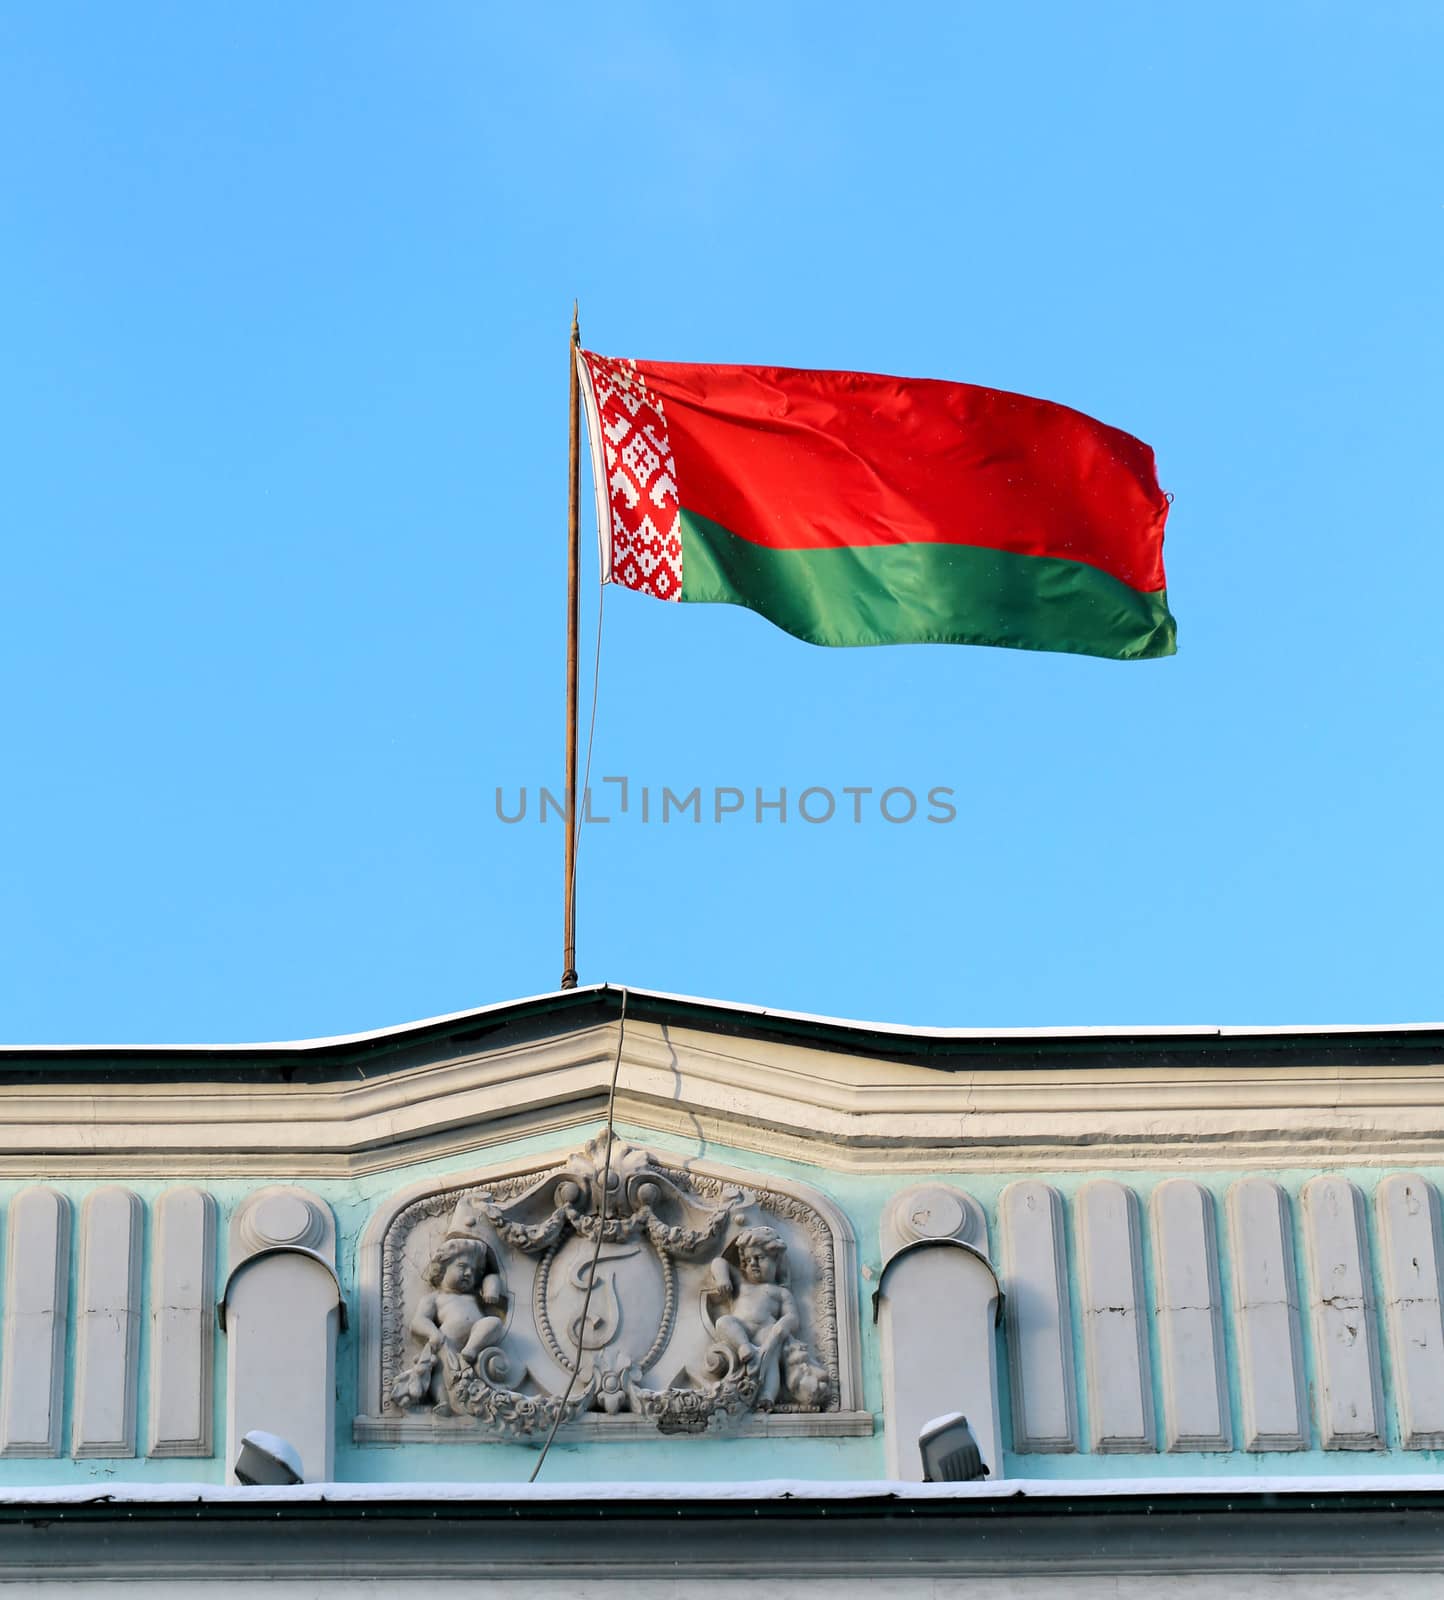 flag of Belarus